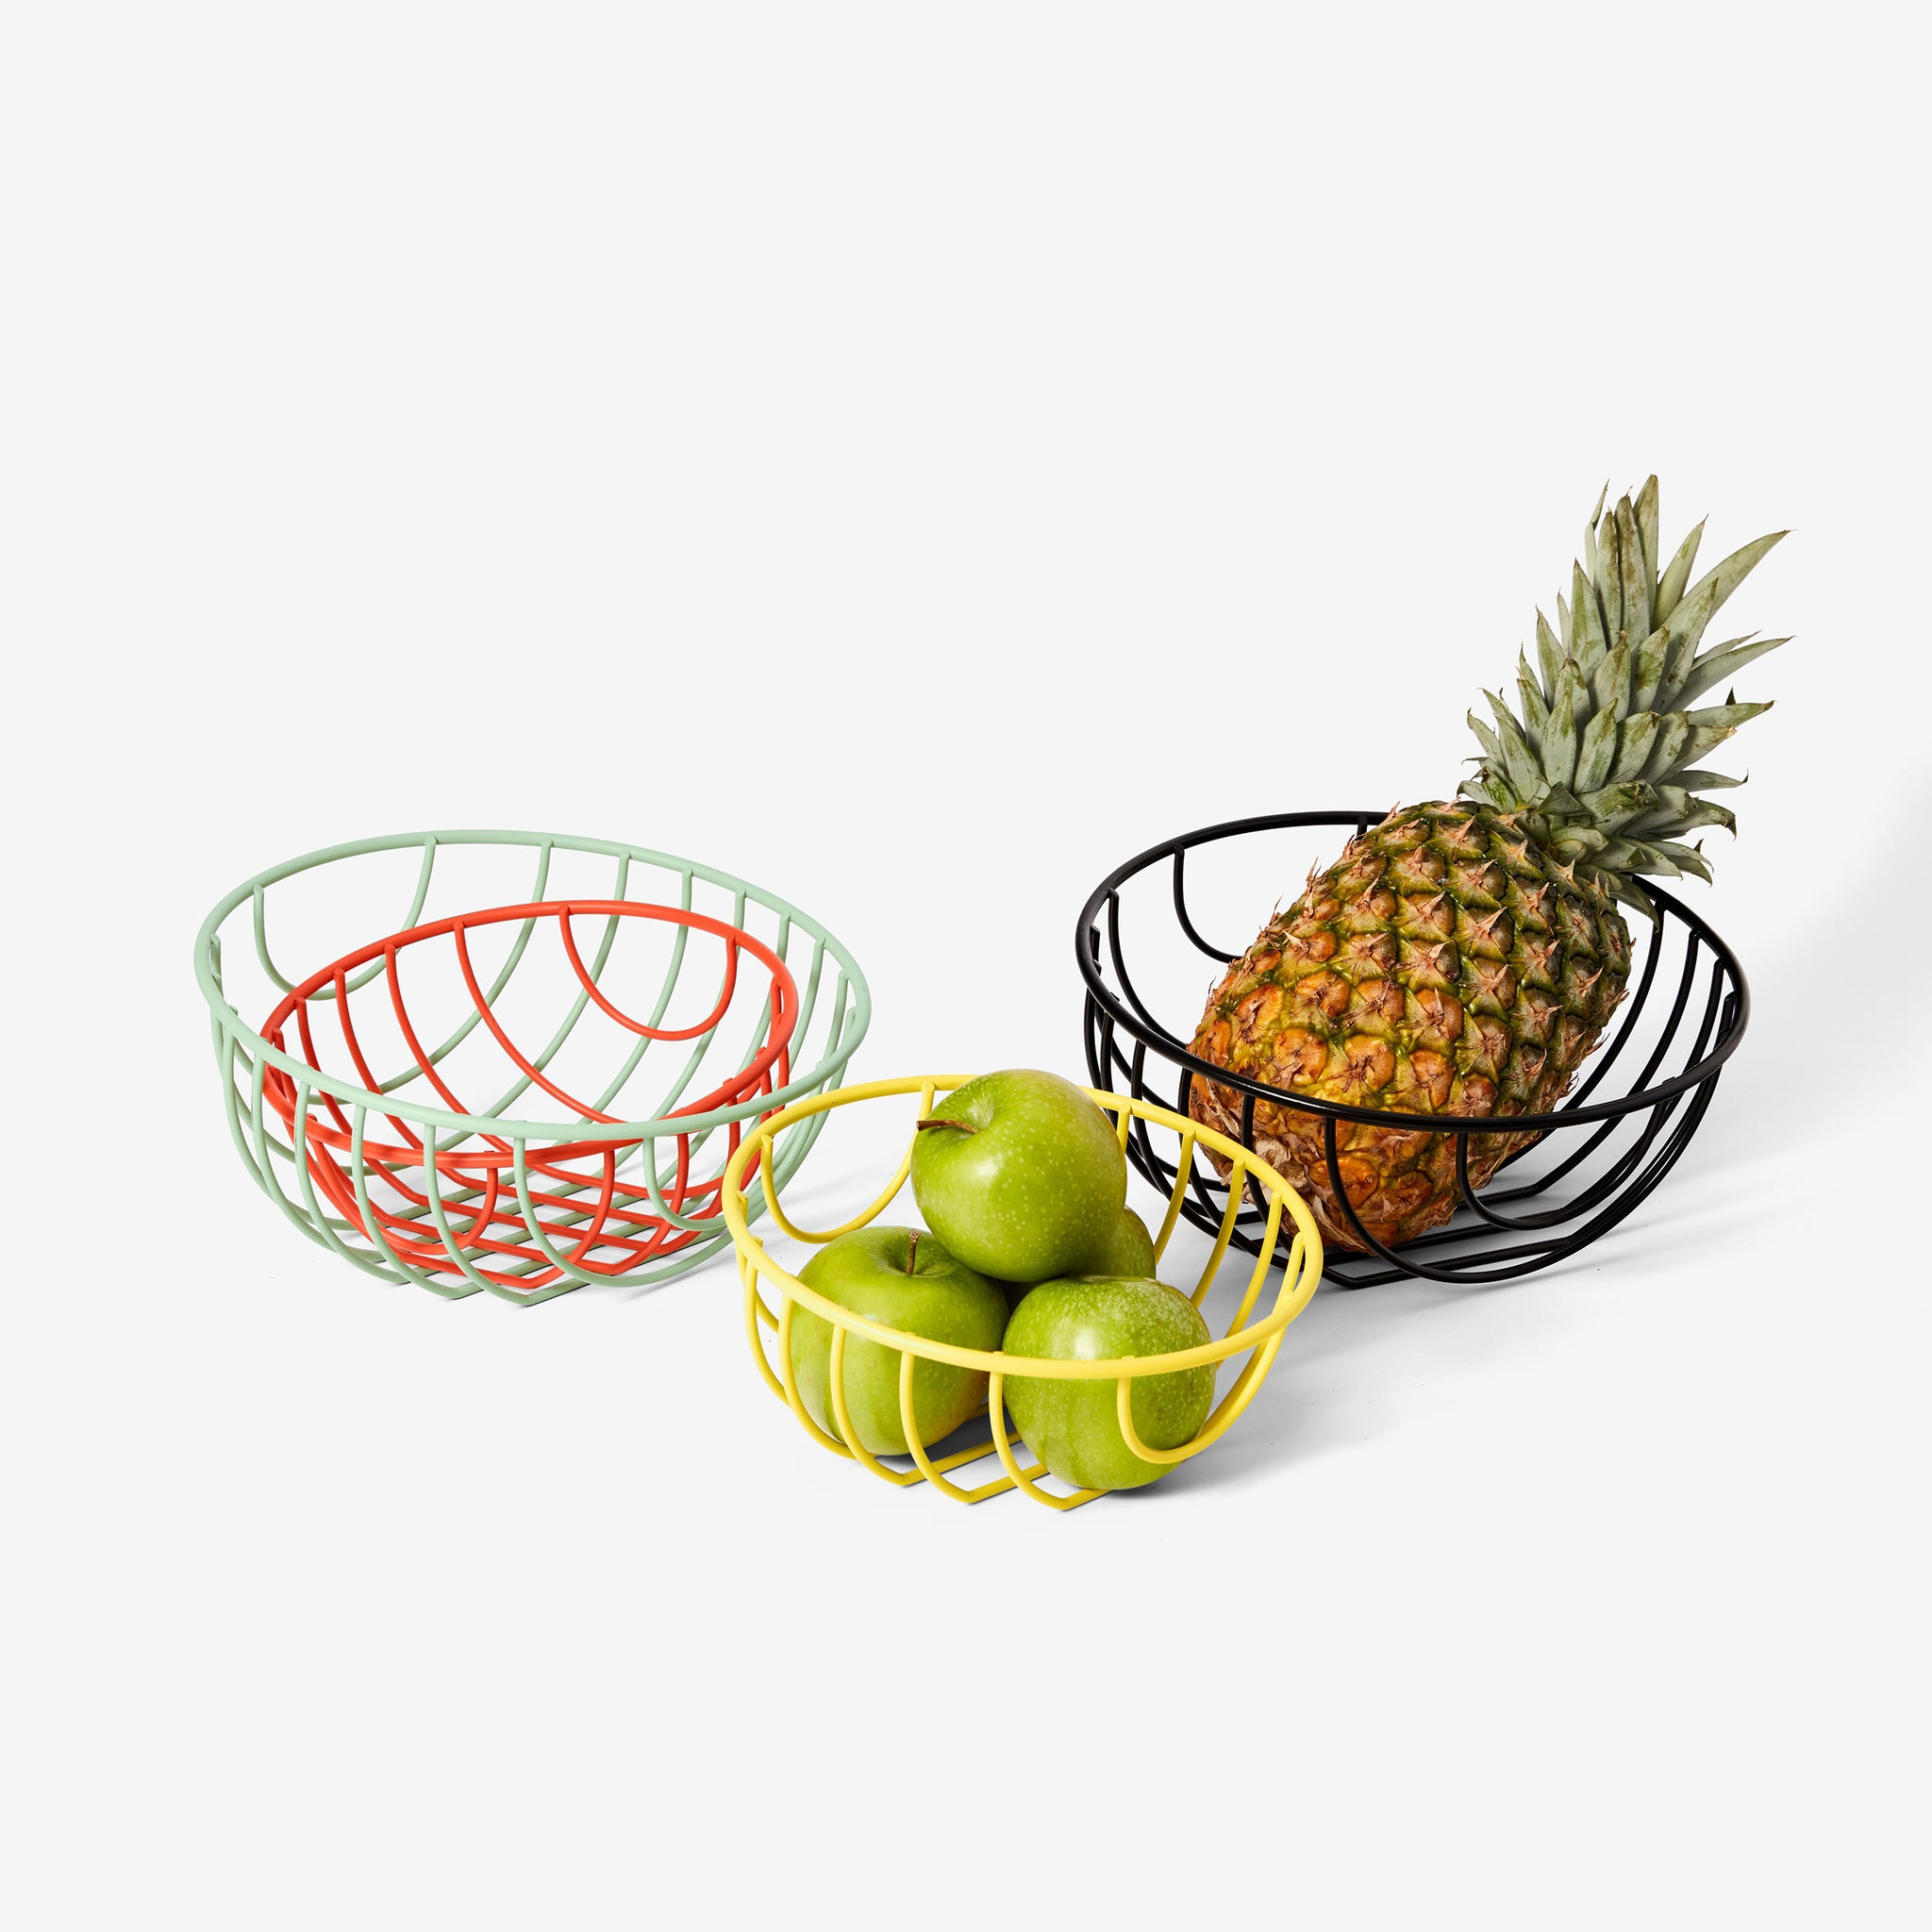 Outline Basket